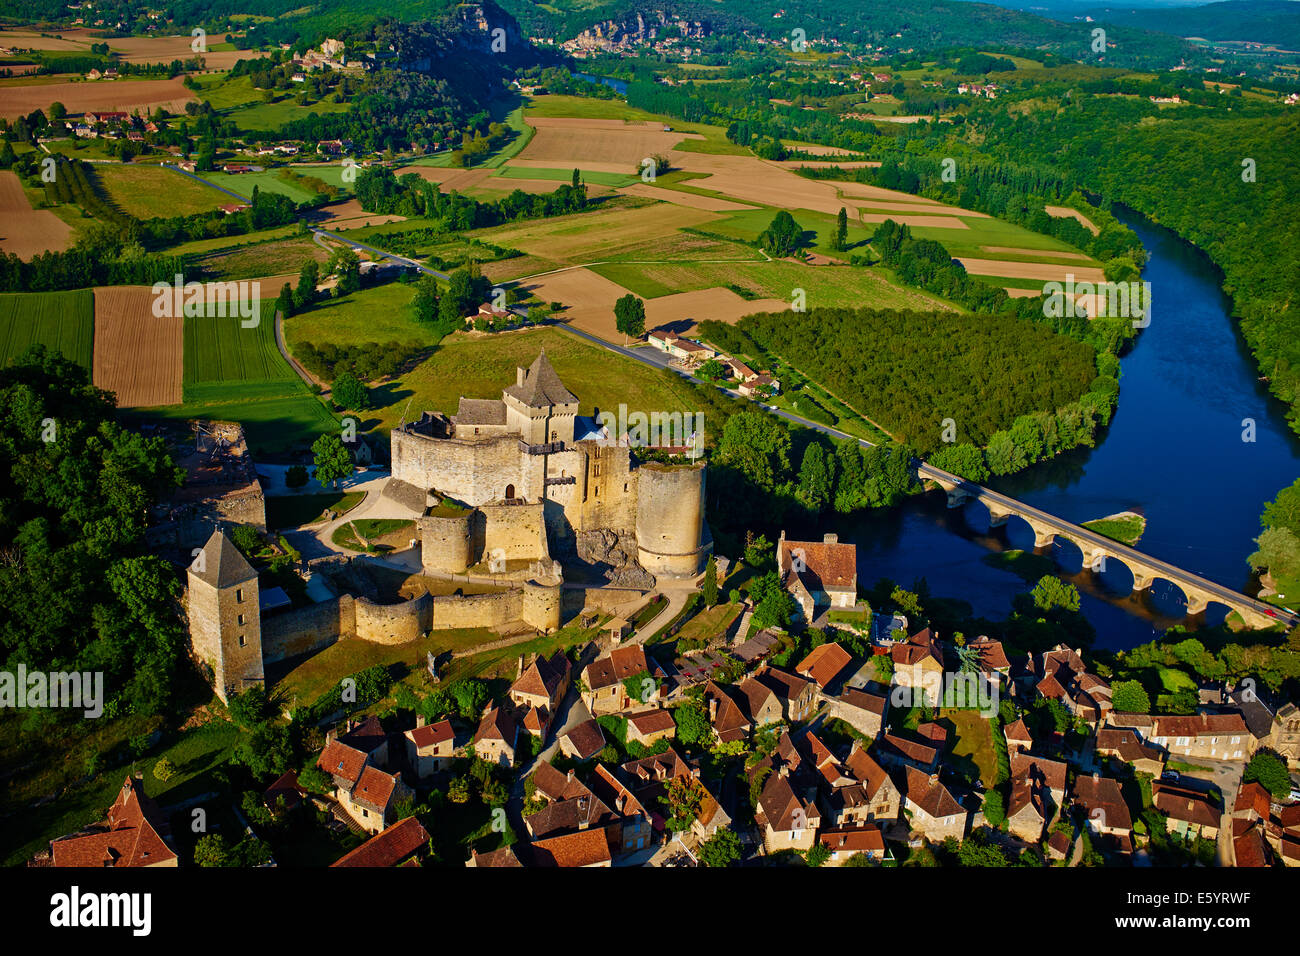 France, Aquitaine, Dordogne, Perigord Noir, Dordogne valley, Castelnaud la Chapelle, Dordogne river, Castelnaud castle Stock Photo